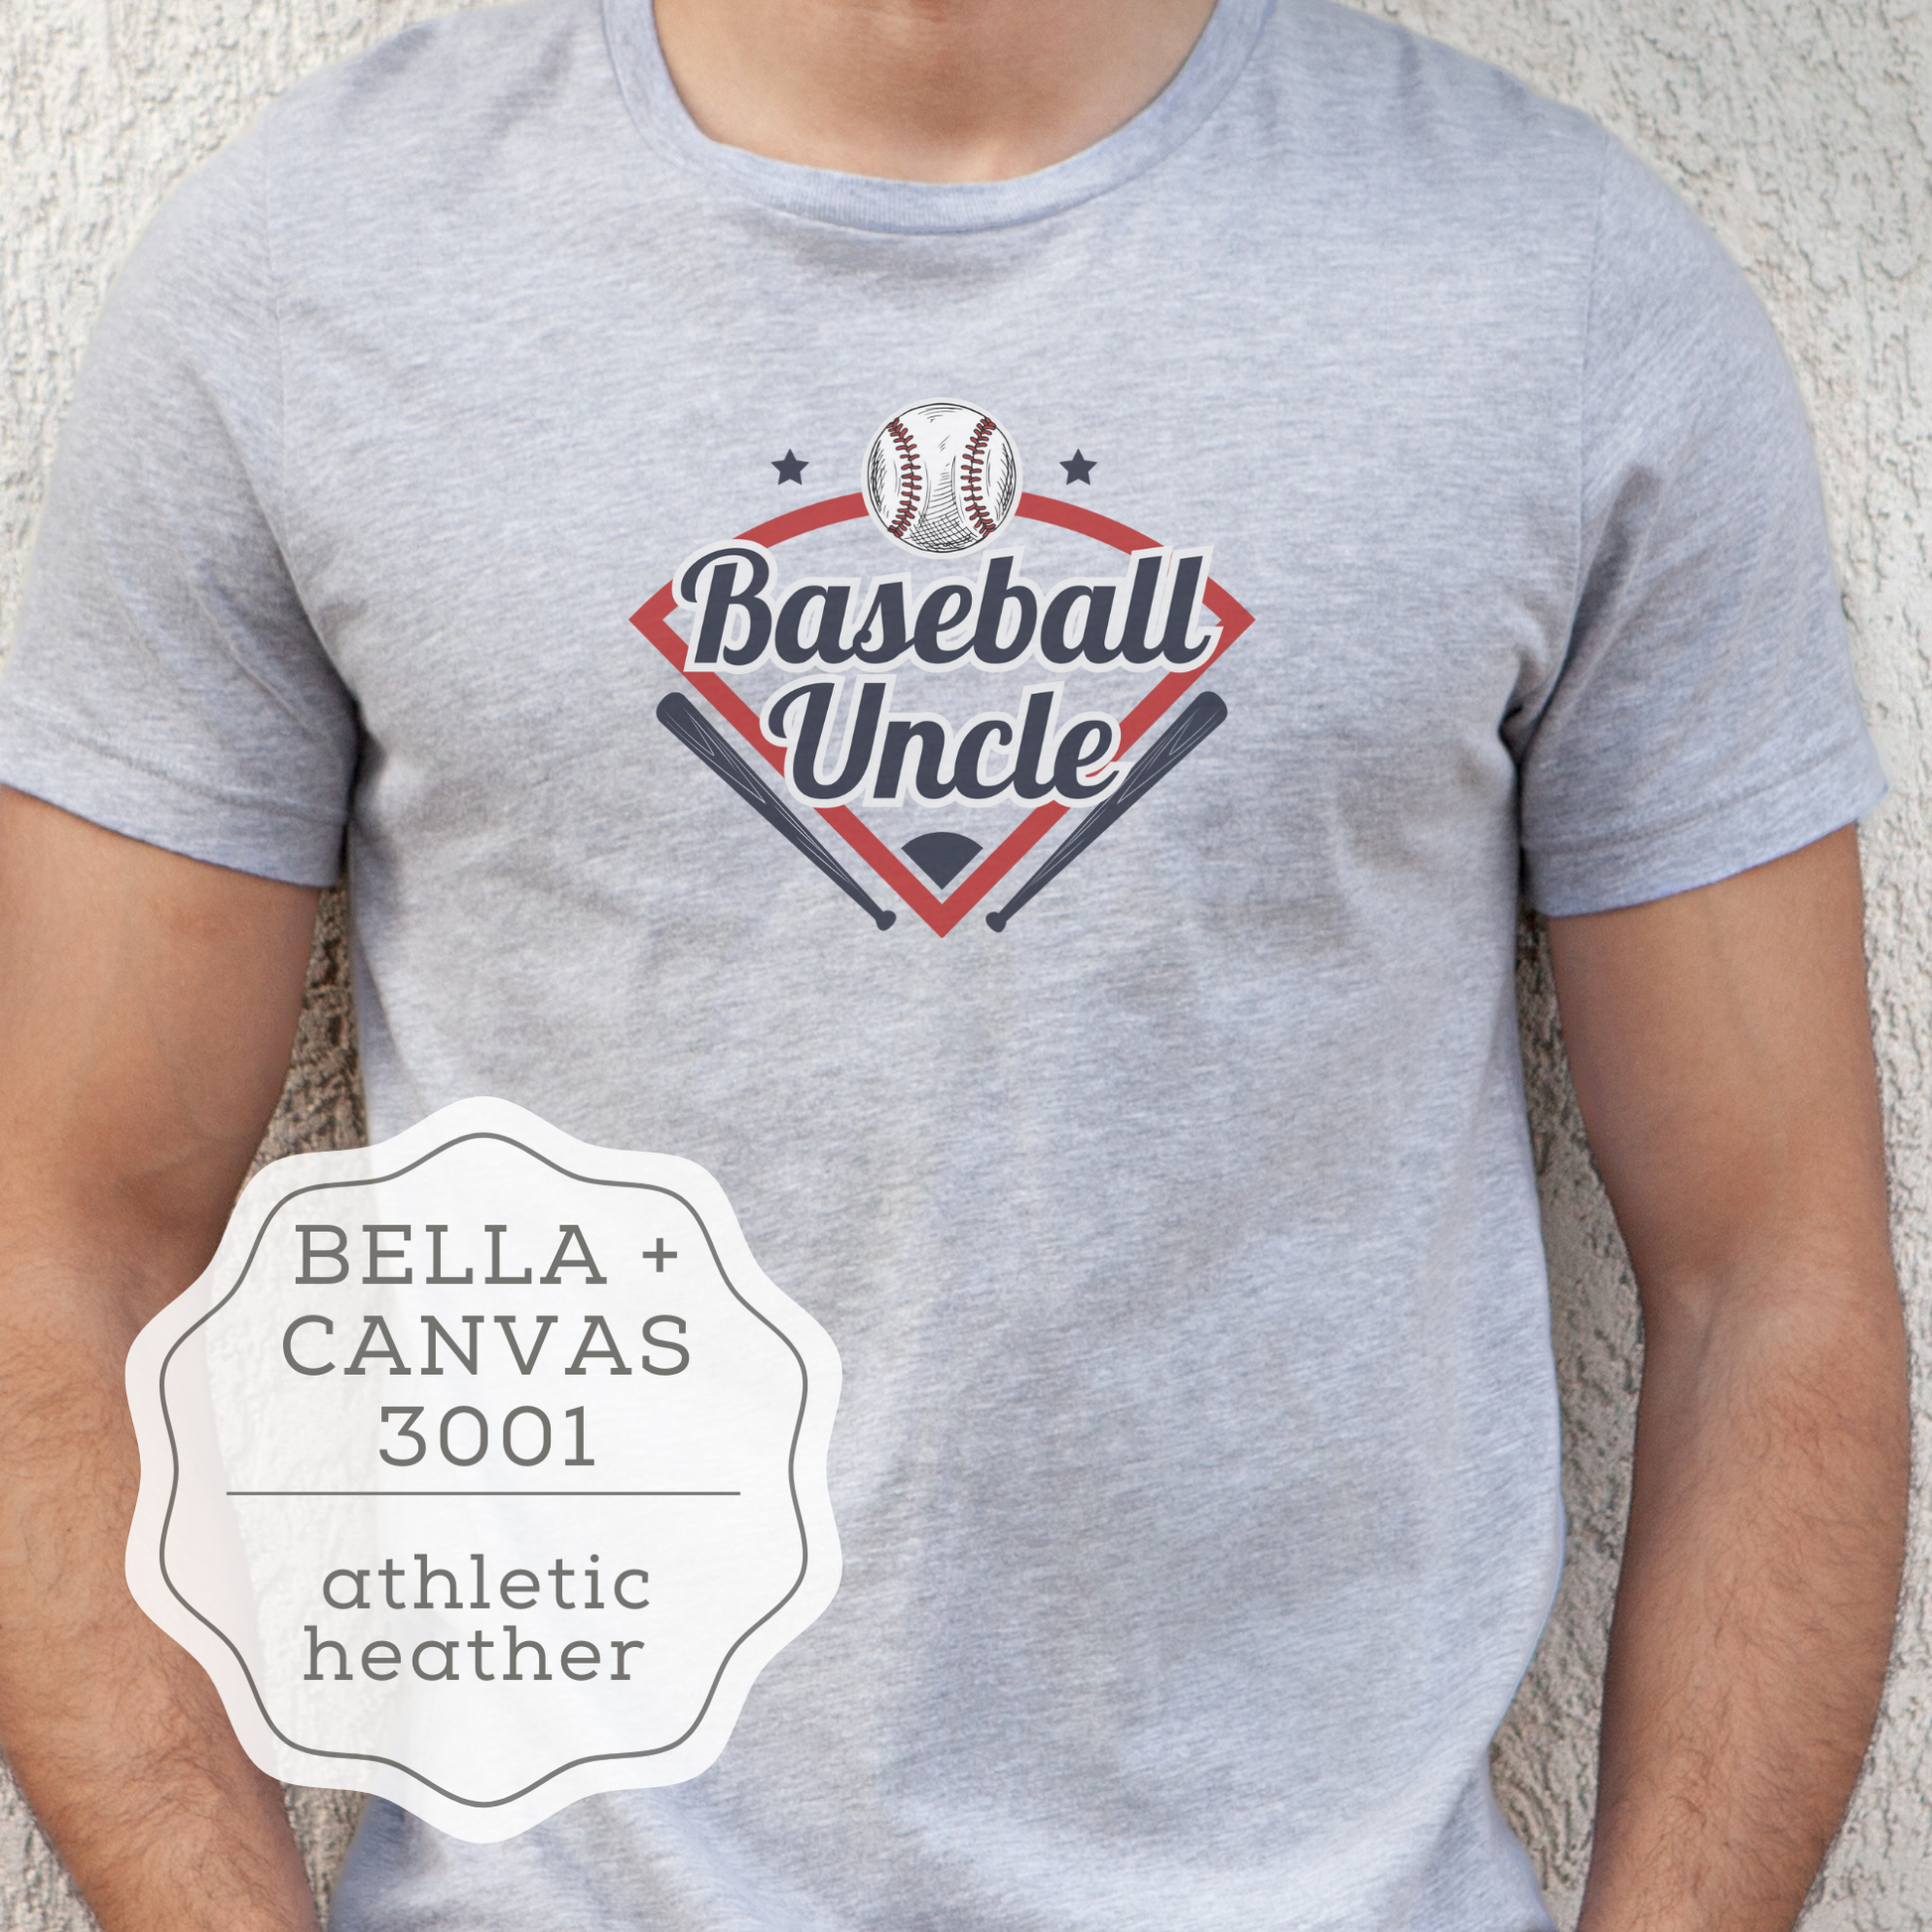 baseball shirt ideas for family